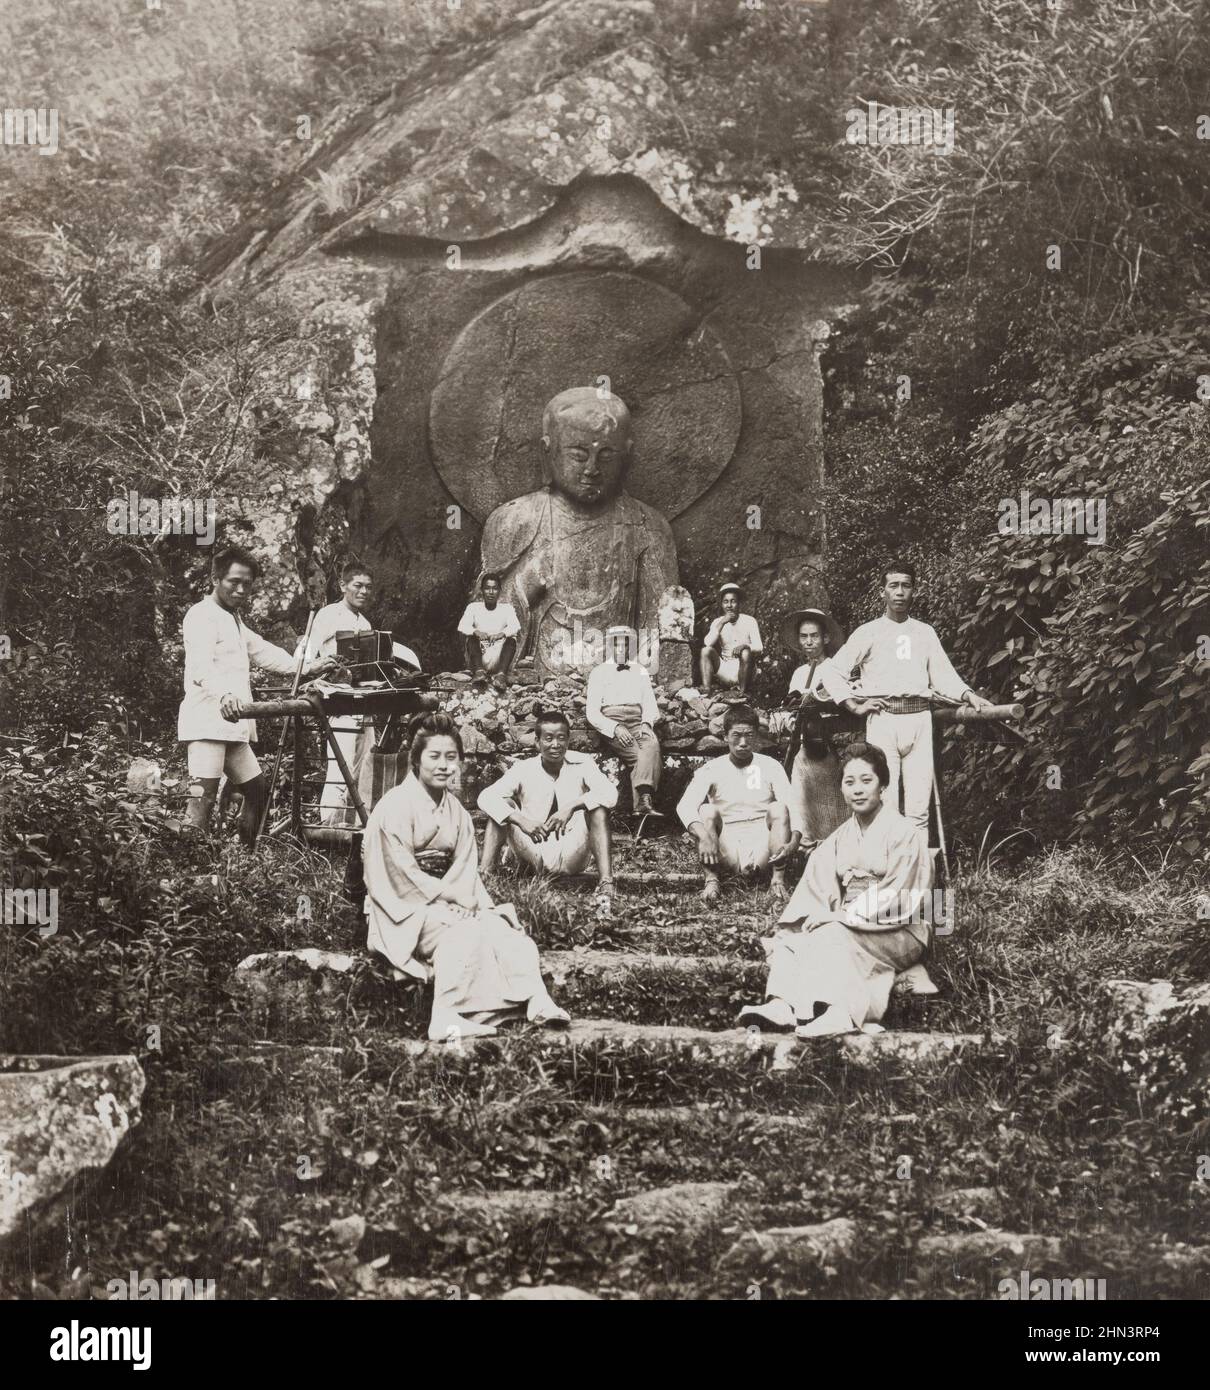 El colosal relieve tallado de Jizo Bosatsu, el santo budista y el santo patrón de los viajeros en Japón. Ashinoyu, Japón. 1901 Foto de stock